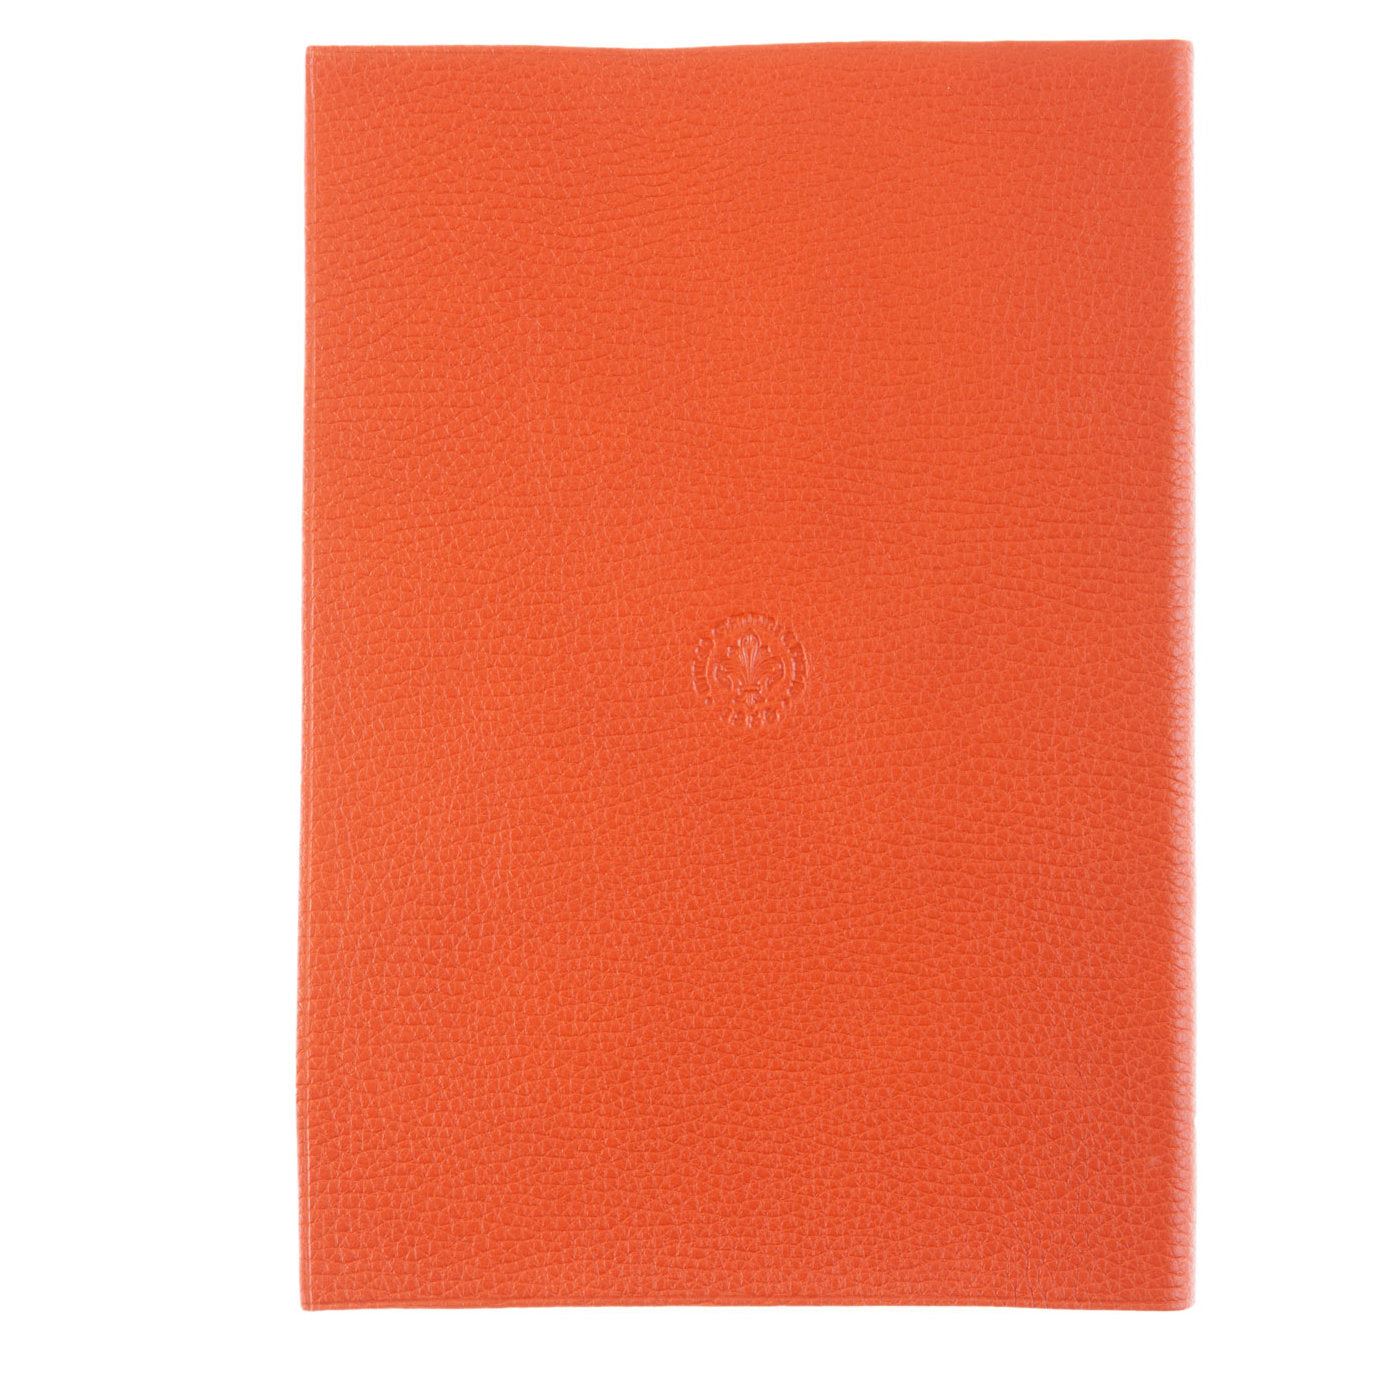 Cuaderno de cuero naranja - Vista alternativa 2